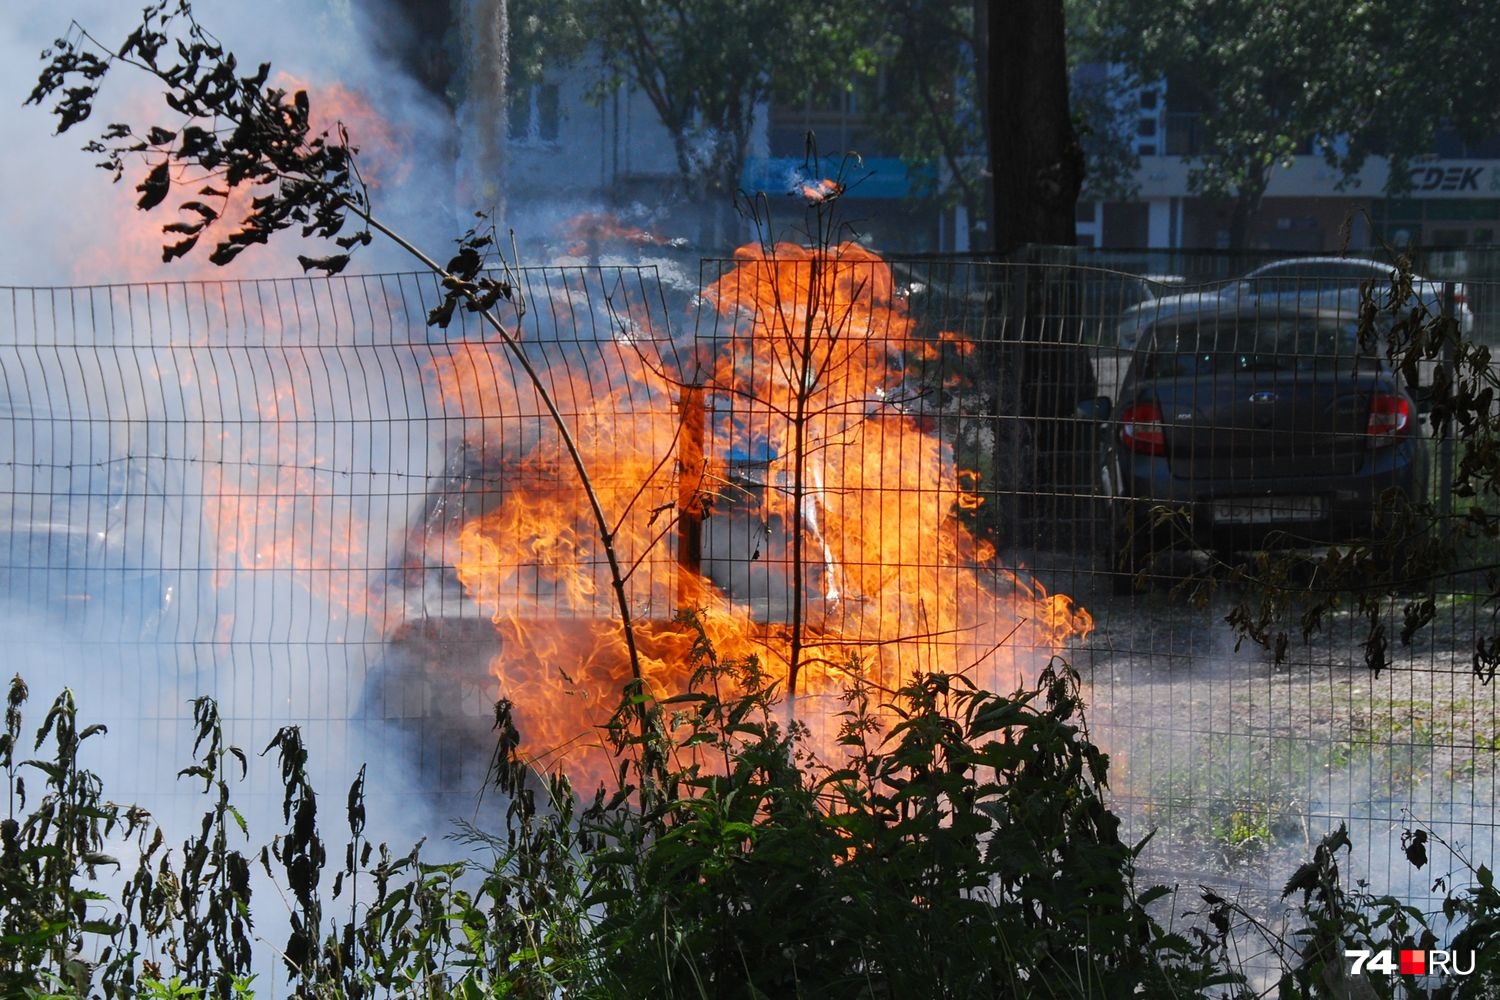 Во дворе на Северо-Западе Челябинска сгорели три машины. Всё началось с тополиного пуха